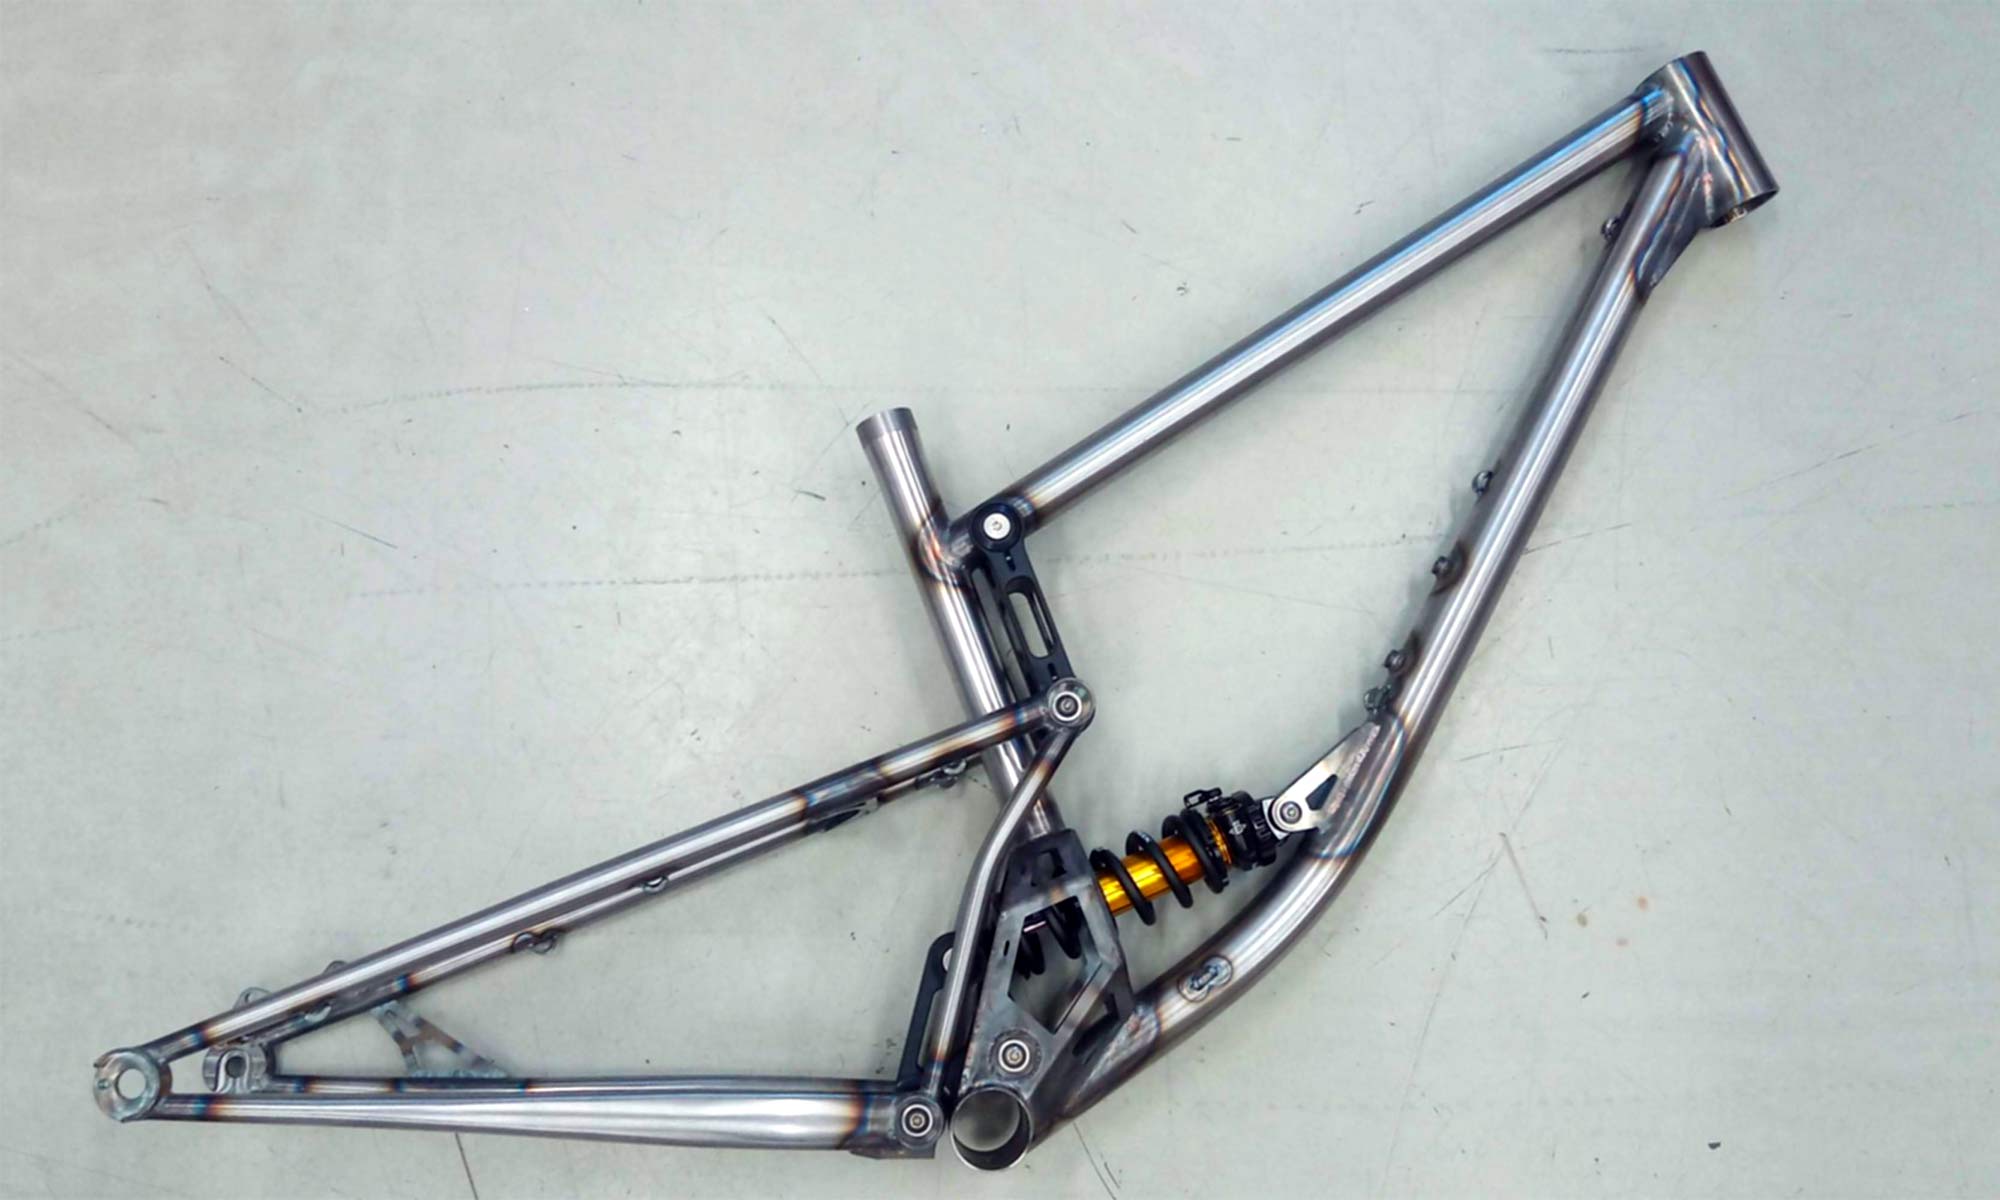 2021 Zoceli Naosm steel full-suspension enduro bike, 160mm travel handmade 29er all-mountain bike, raw frame